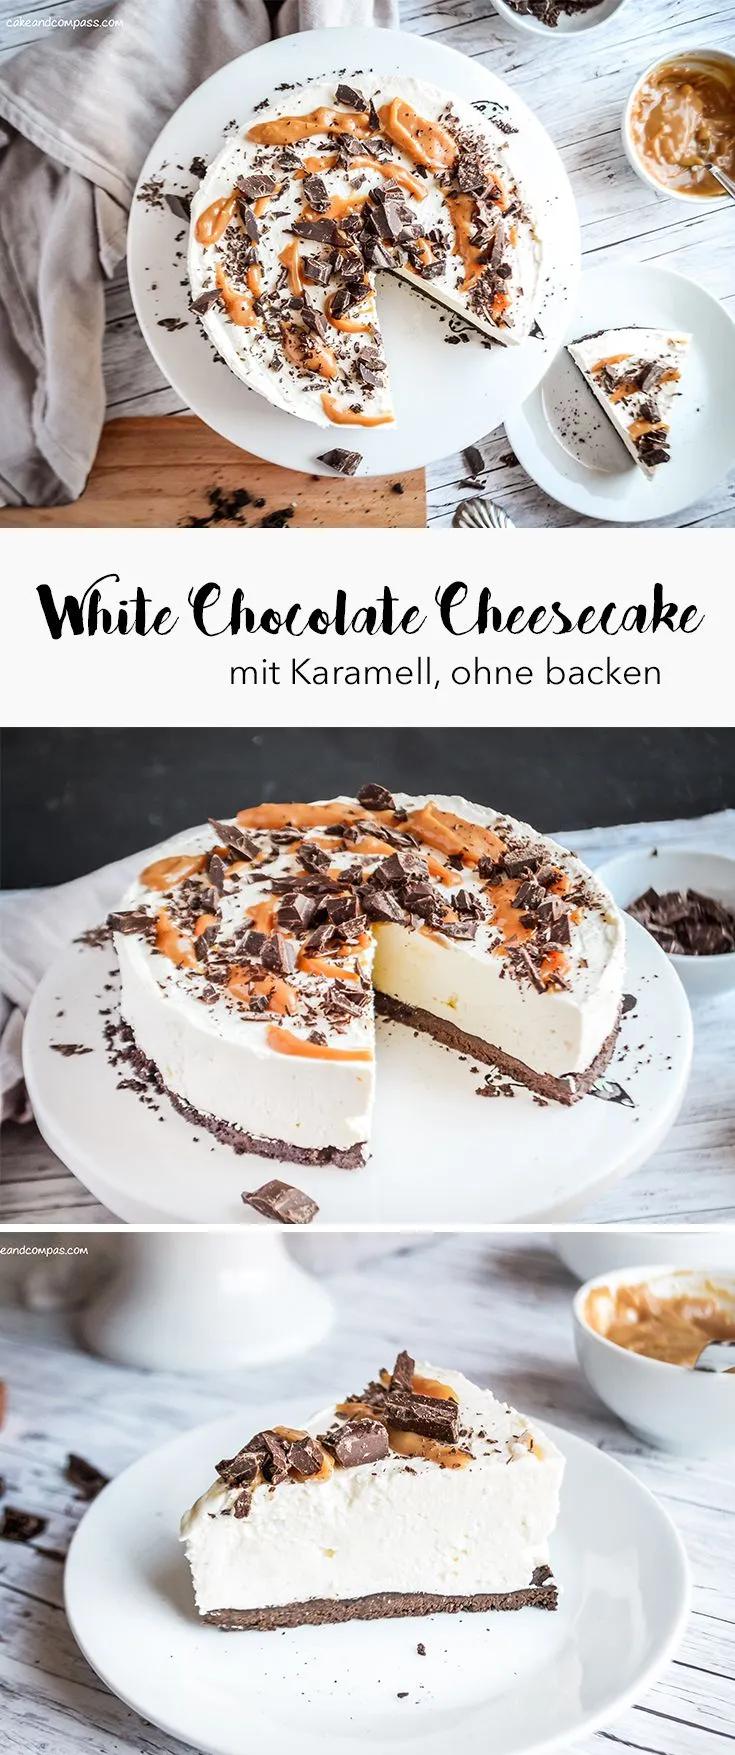 White Chocolate Cheesecake mit Karamell | Butterkeks kuchen ohne backen ...